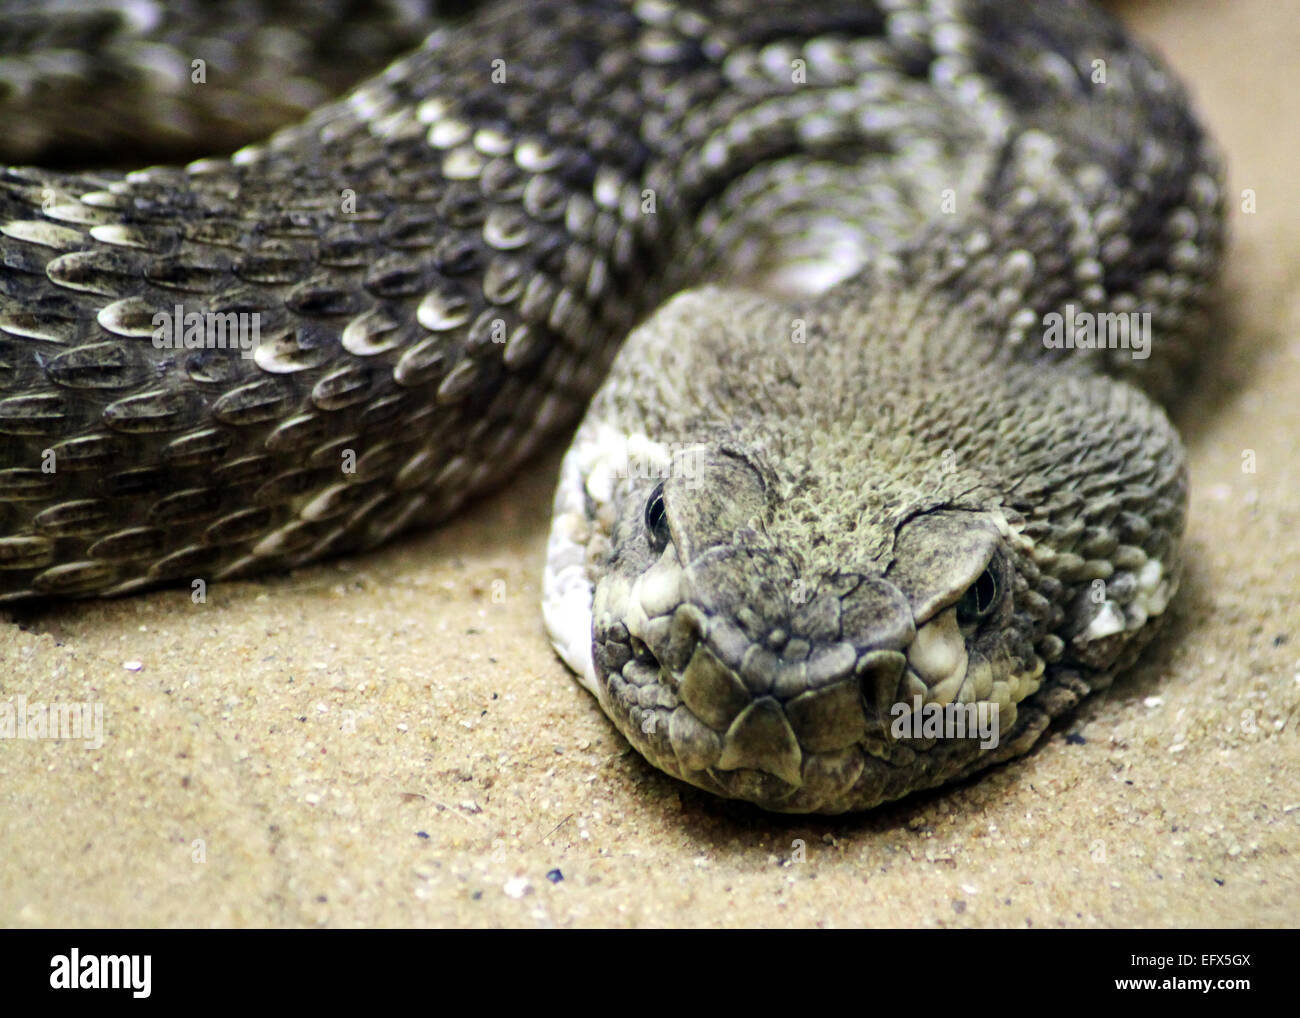 Serpiente Anaconda tendido sobre la arena. Foto de stock